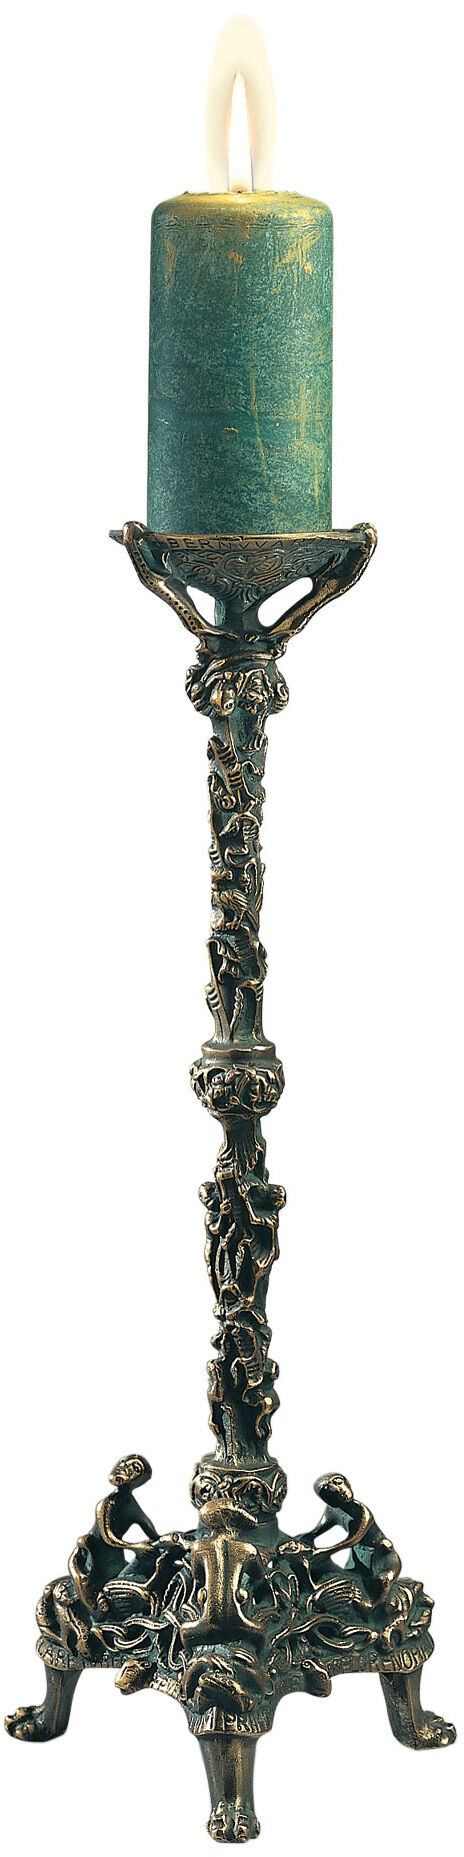 Chandelier de Saint-Bernard (réduction), version bronzée